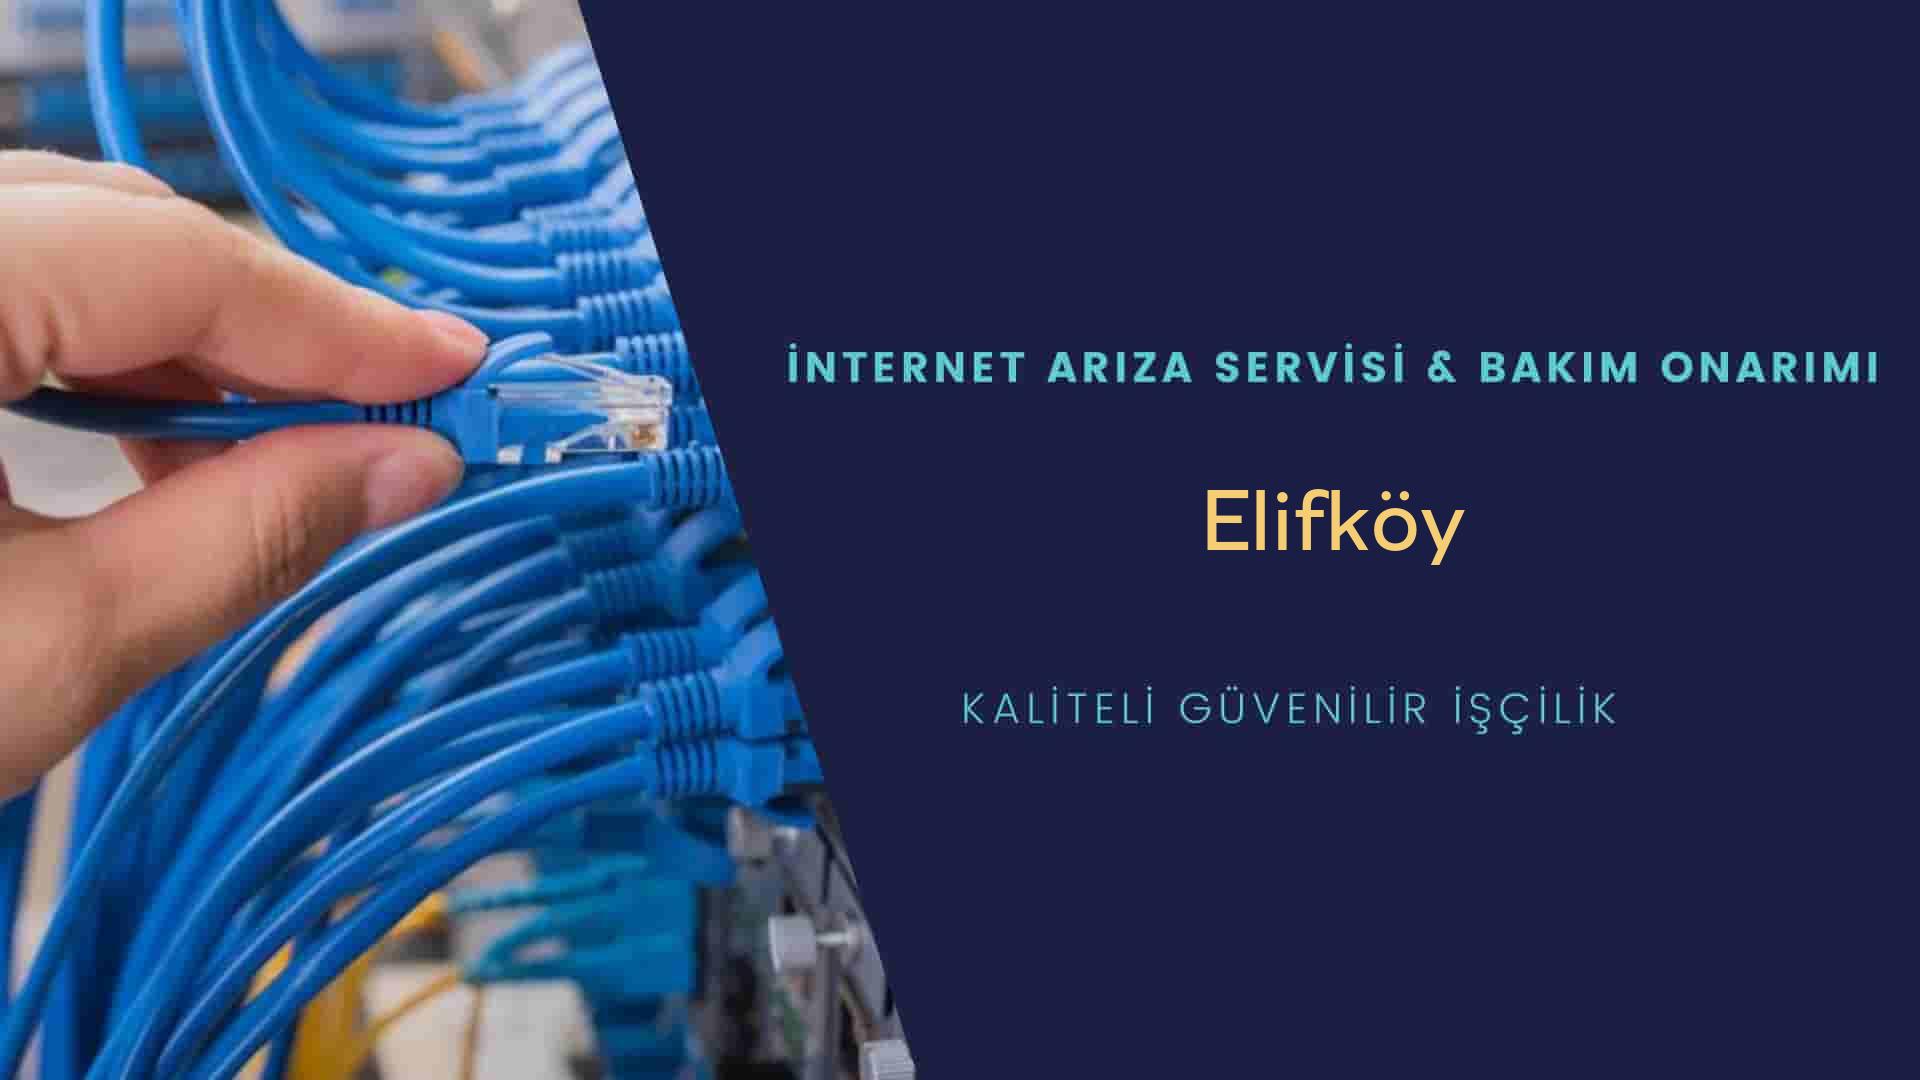 Elifköy internet kablosu çekimi yapan yerler veya elektrikçiler mi? arıyorsunuz doğru yerdesiniz o zaman sizlere 7/24 yardımcı olacak profesyonel ustalarımız bir telefon kadar yakındır size.